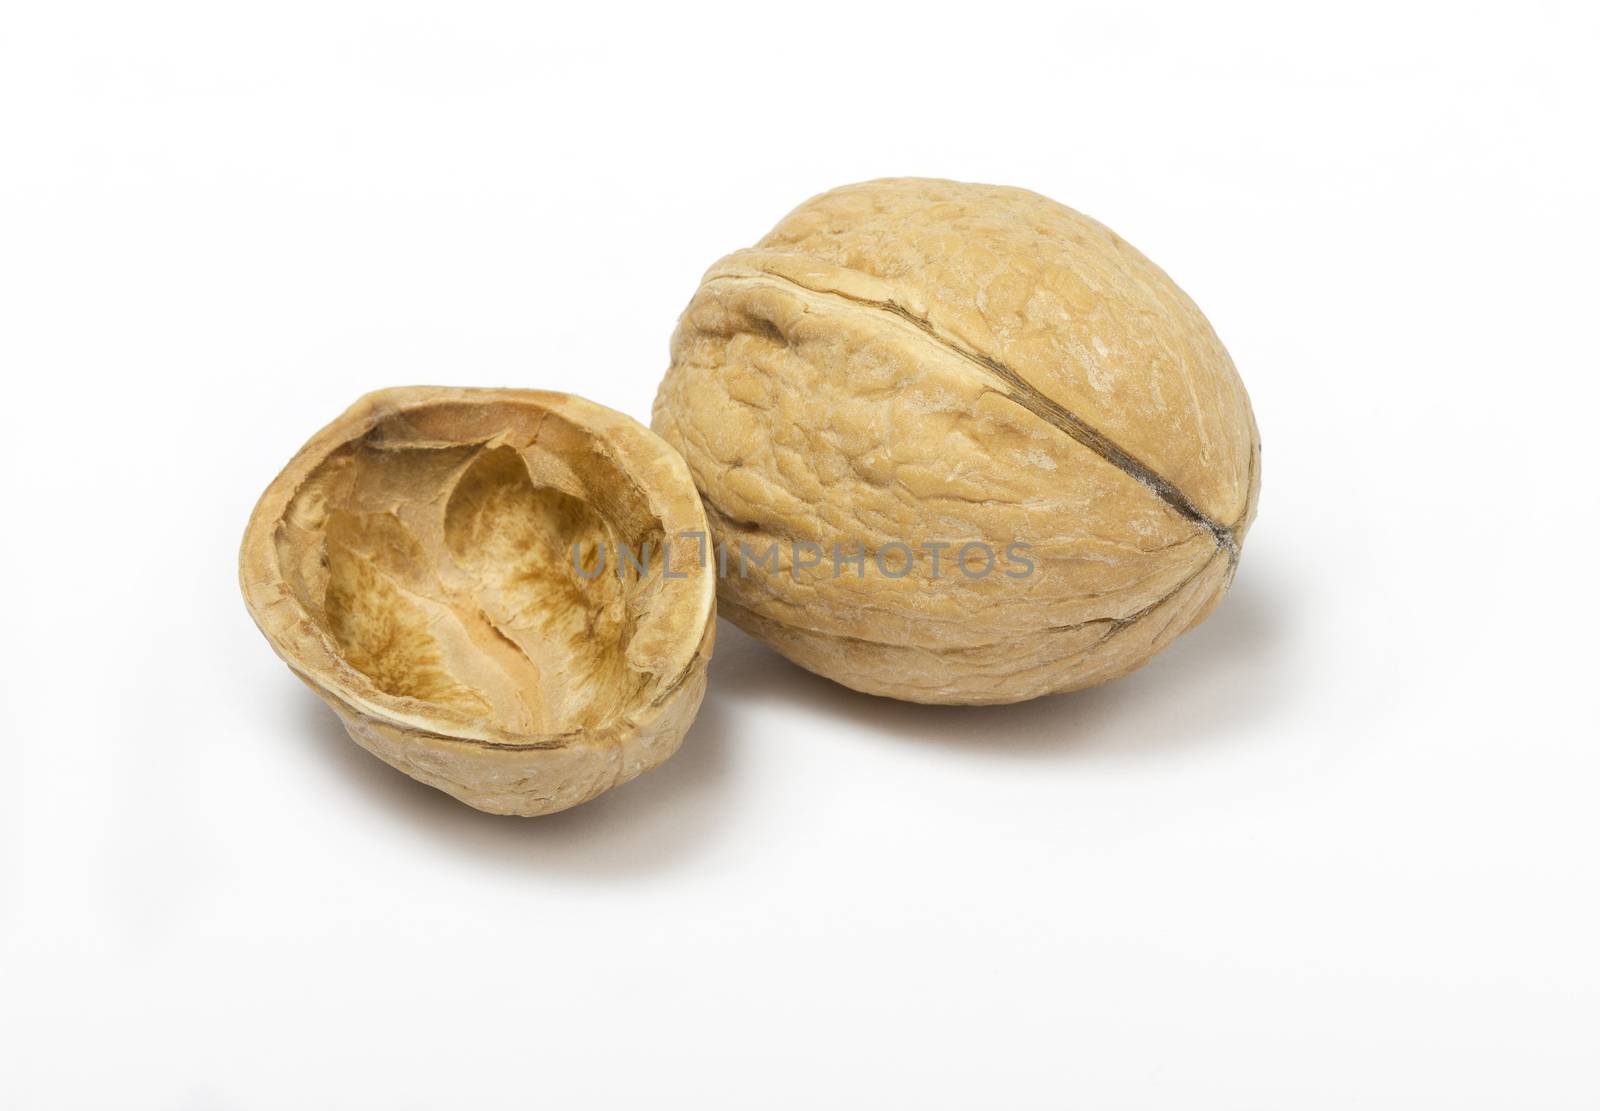 Walnut shell by matteobragaglio